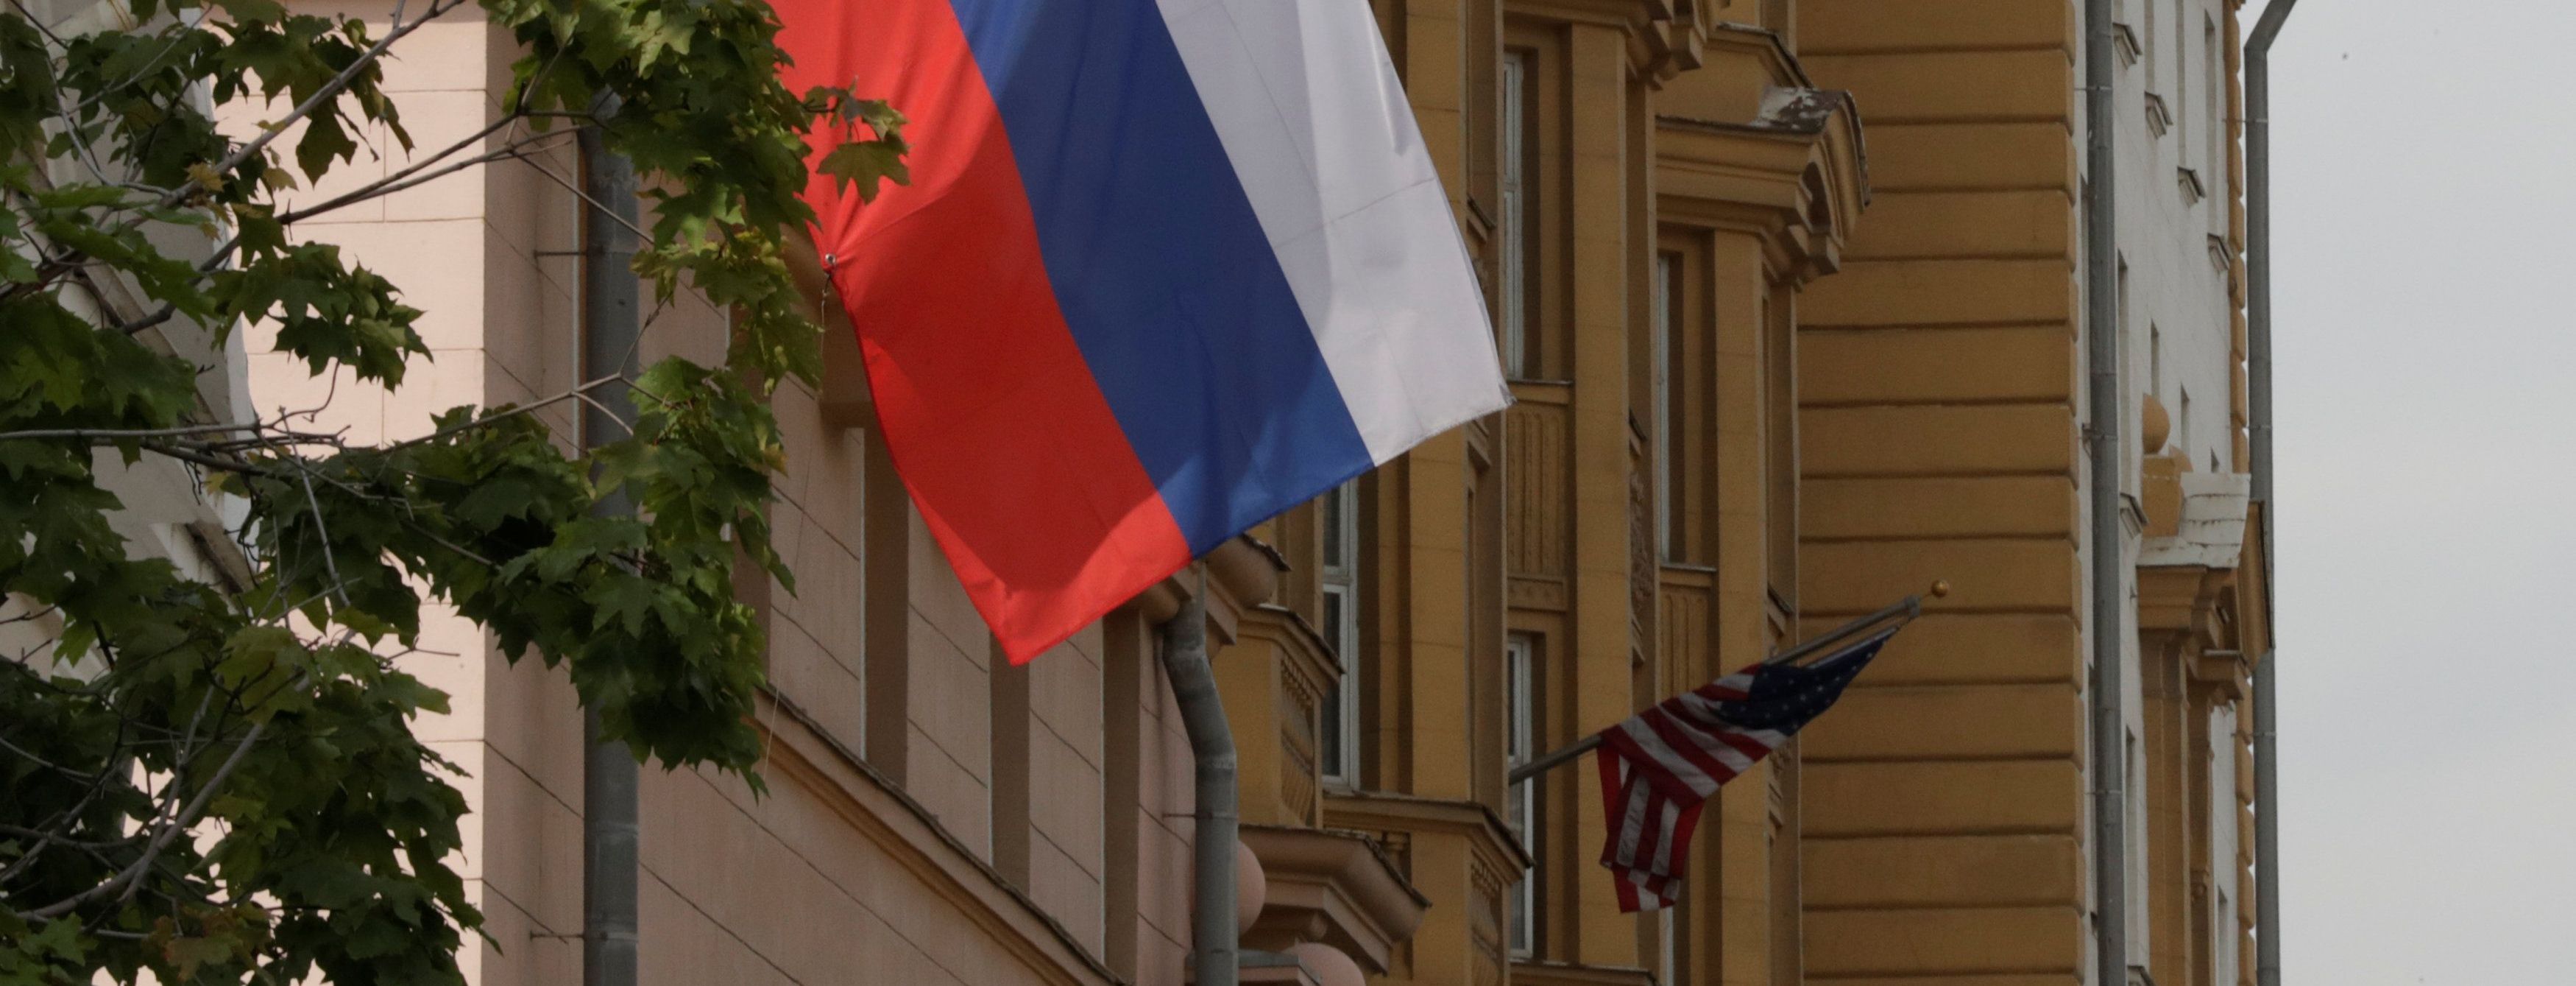 Россия собирается судиться со США за дипсобственность